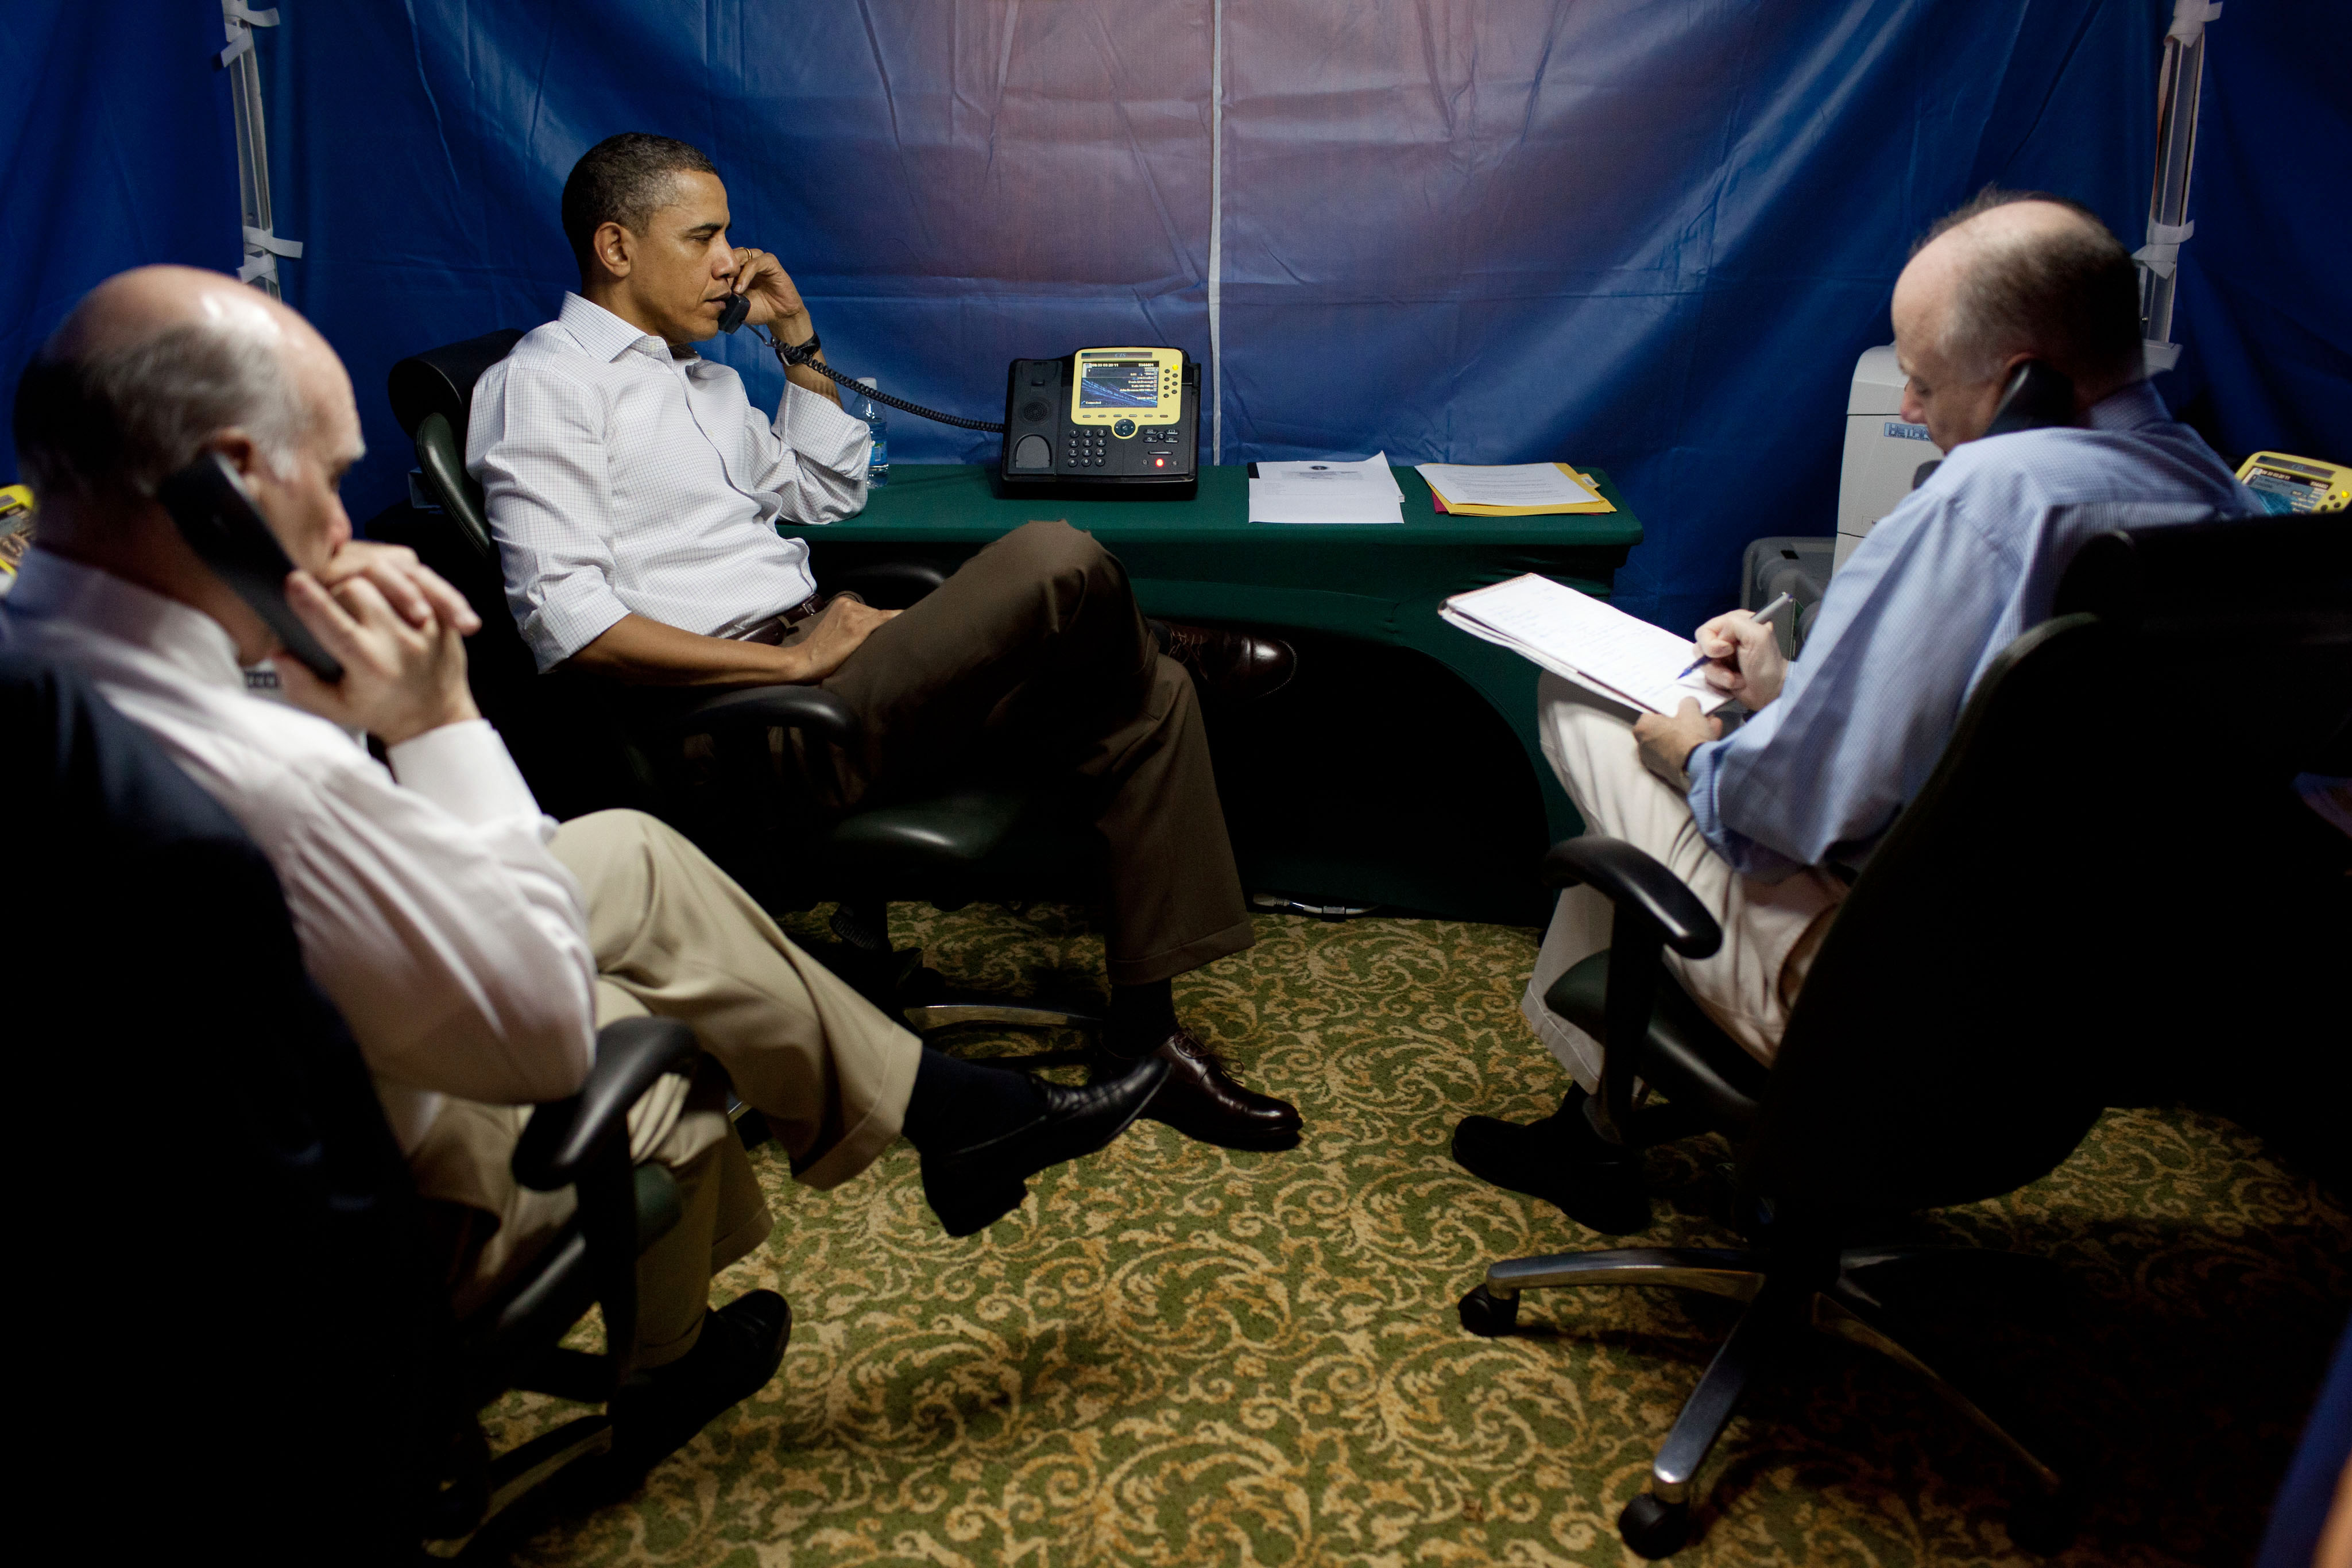 Barack Obama inside a SCIF